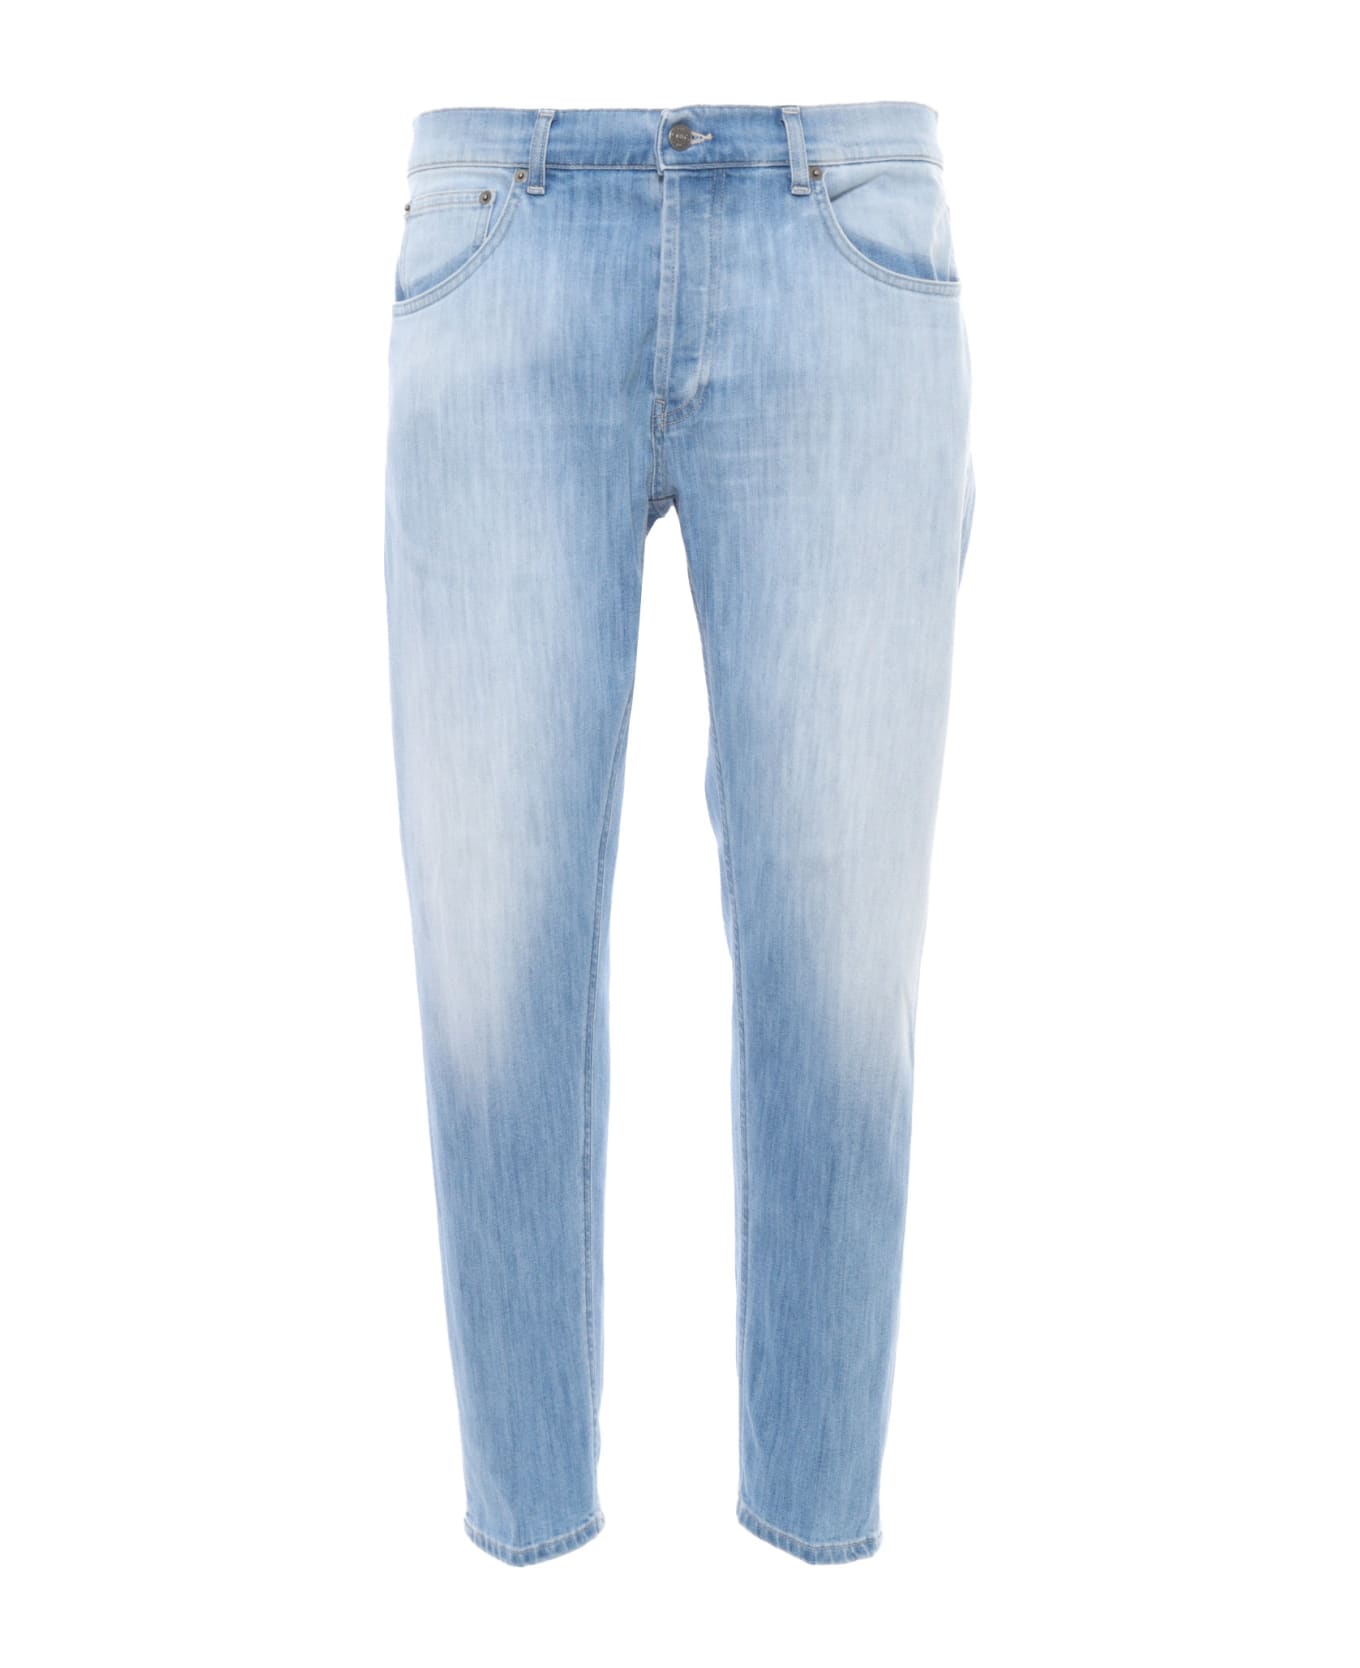 Dondup Washed Light Blue Jeans - BLUE